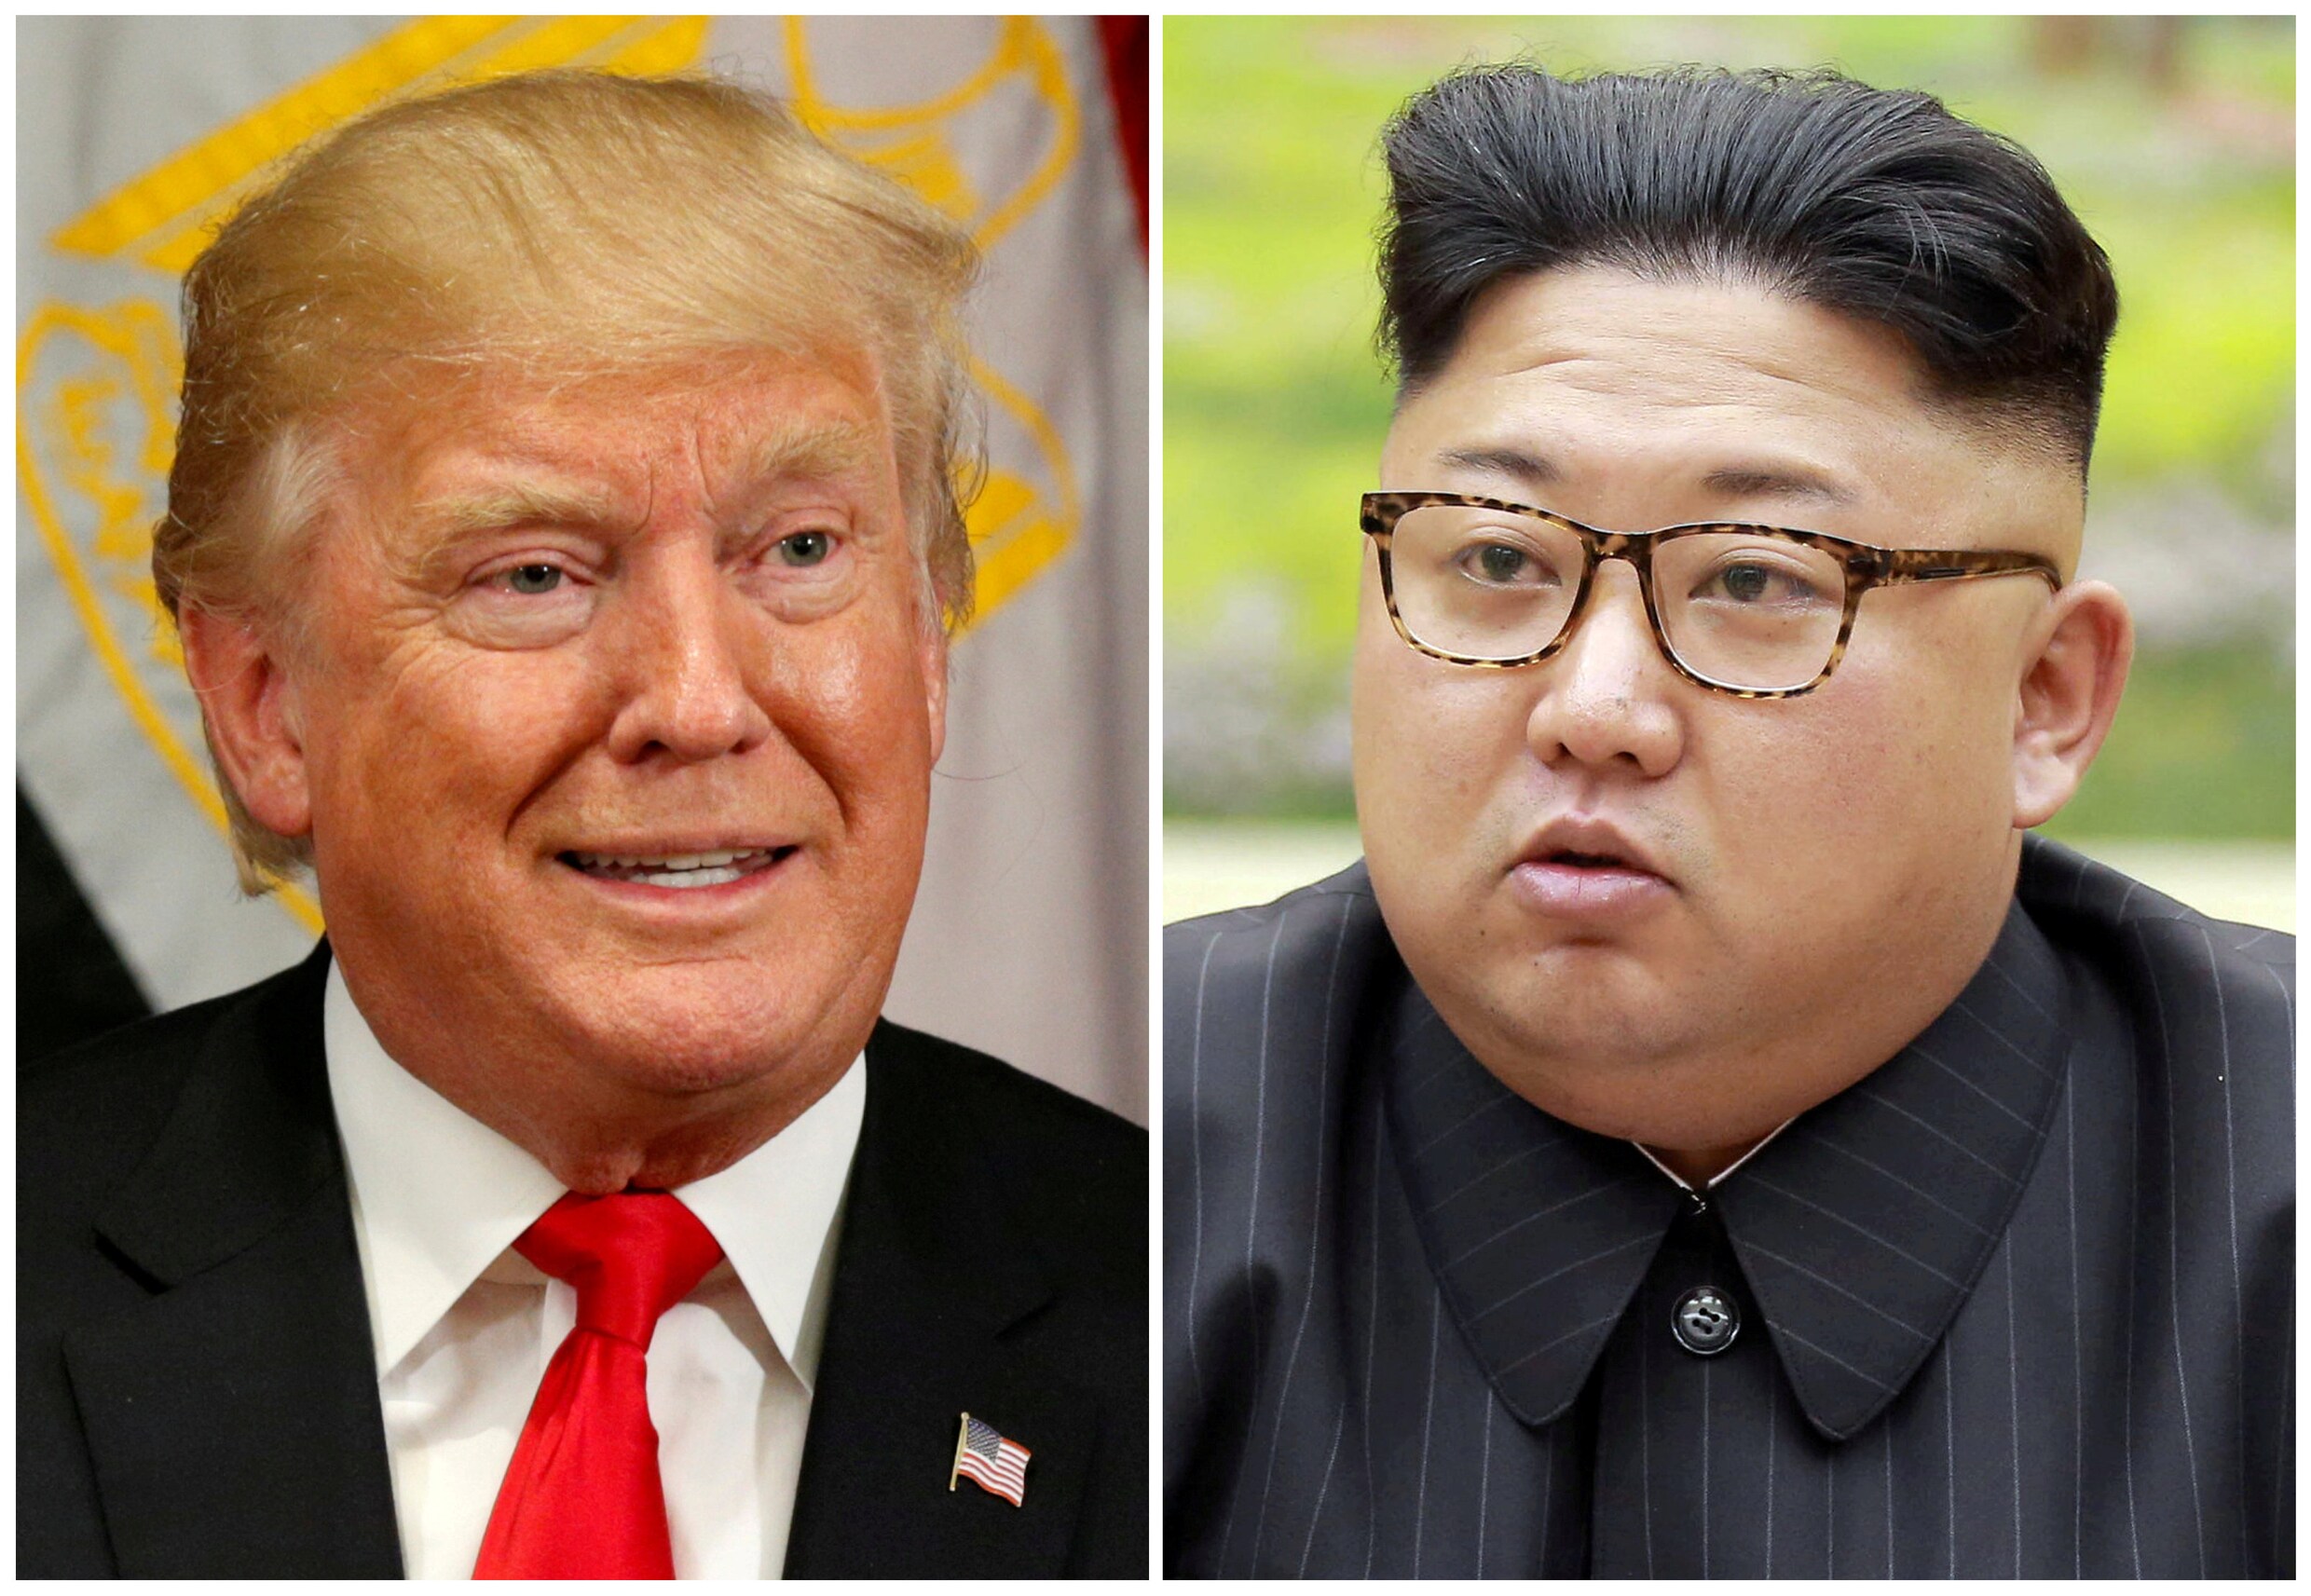 Noord-Korea: "Dat Trump Pyongyang opnieuw op terreurlijst plaatst is zware provocatie"